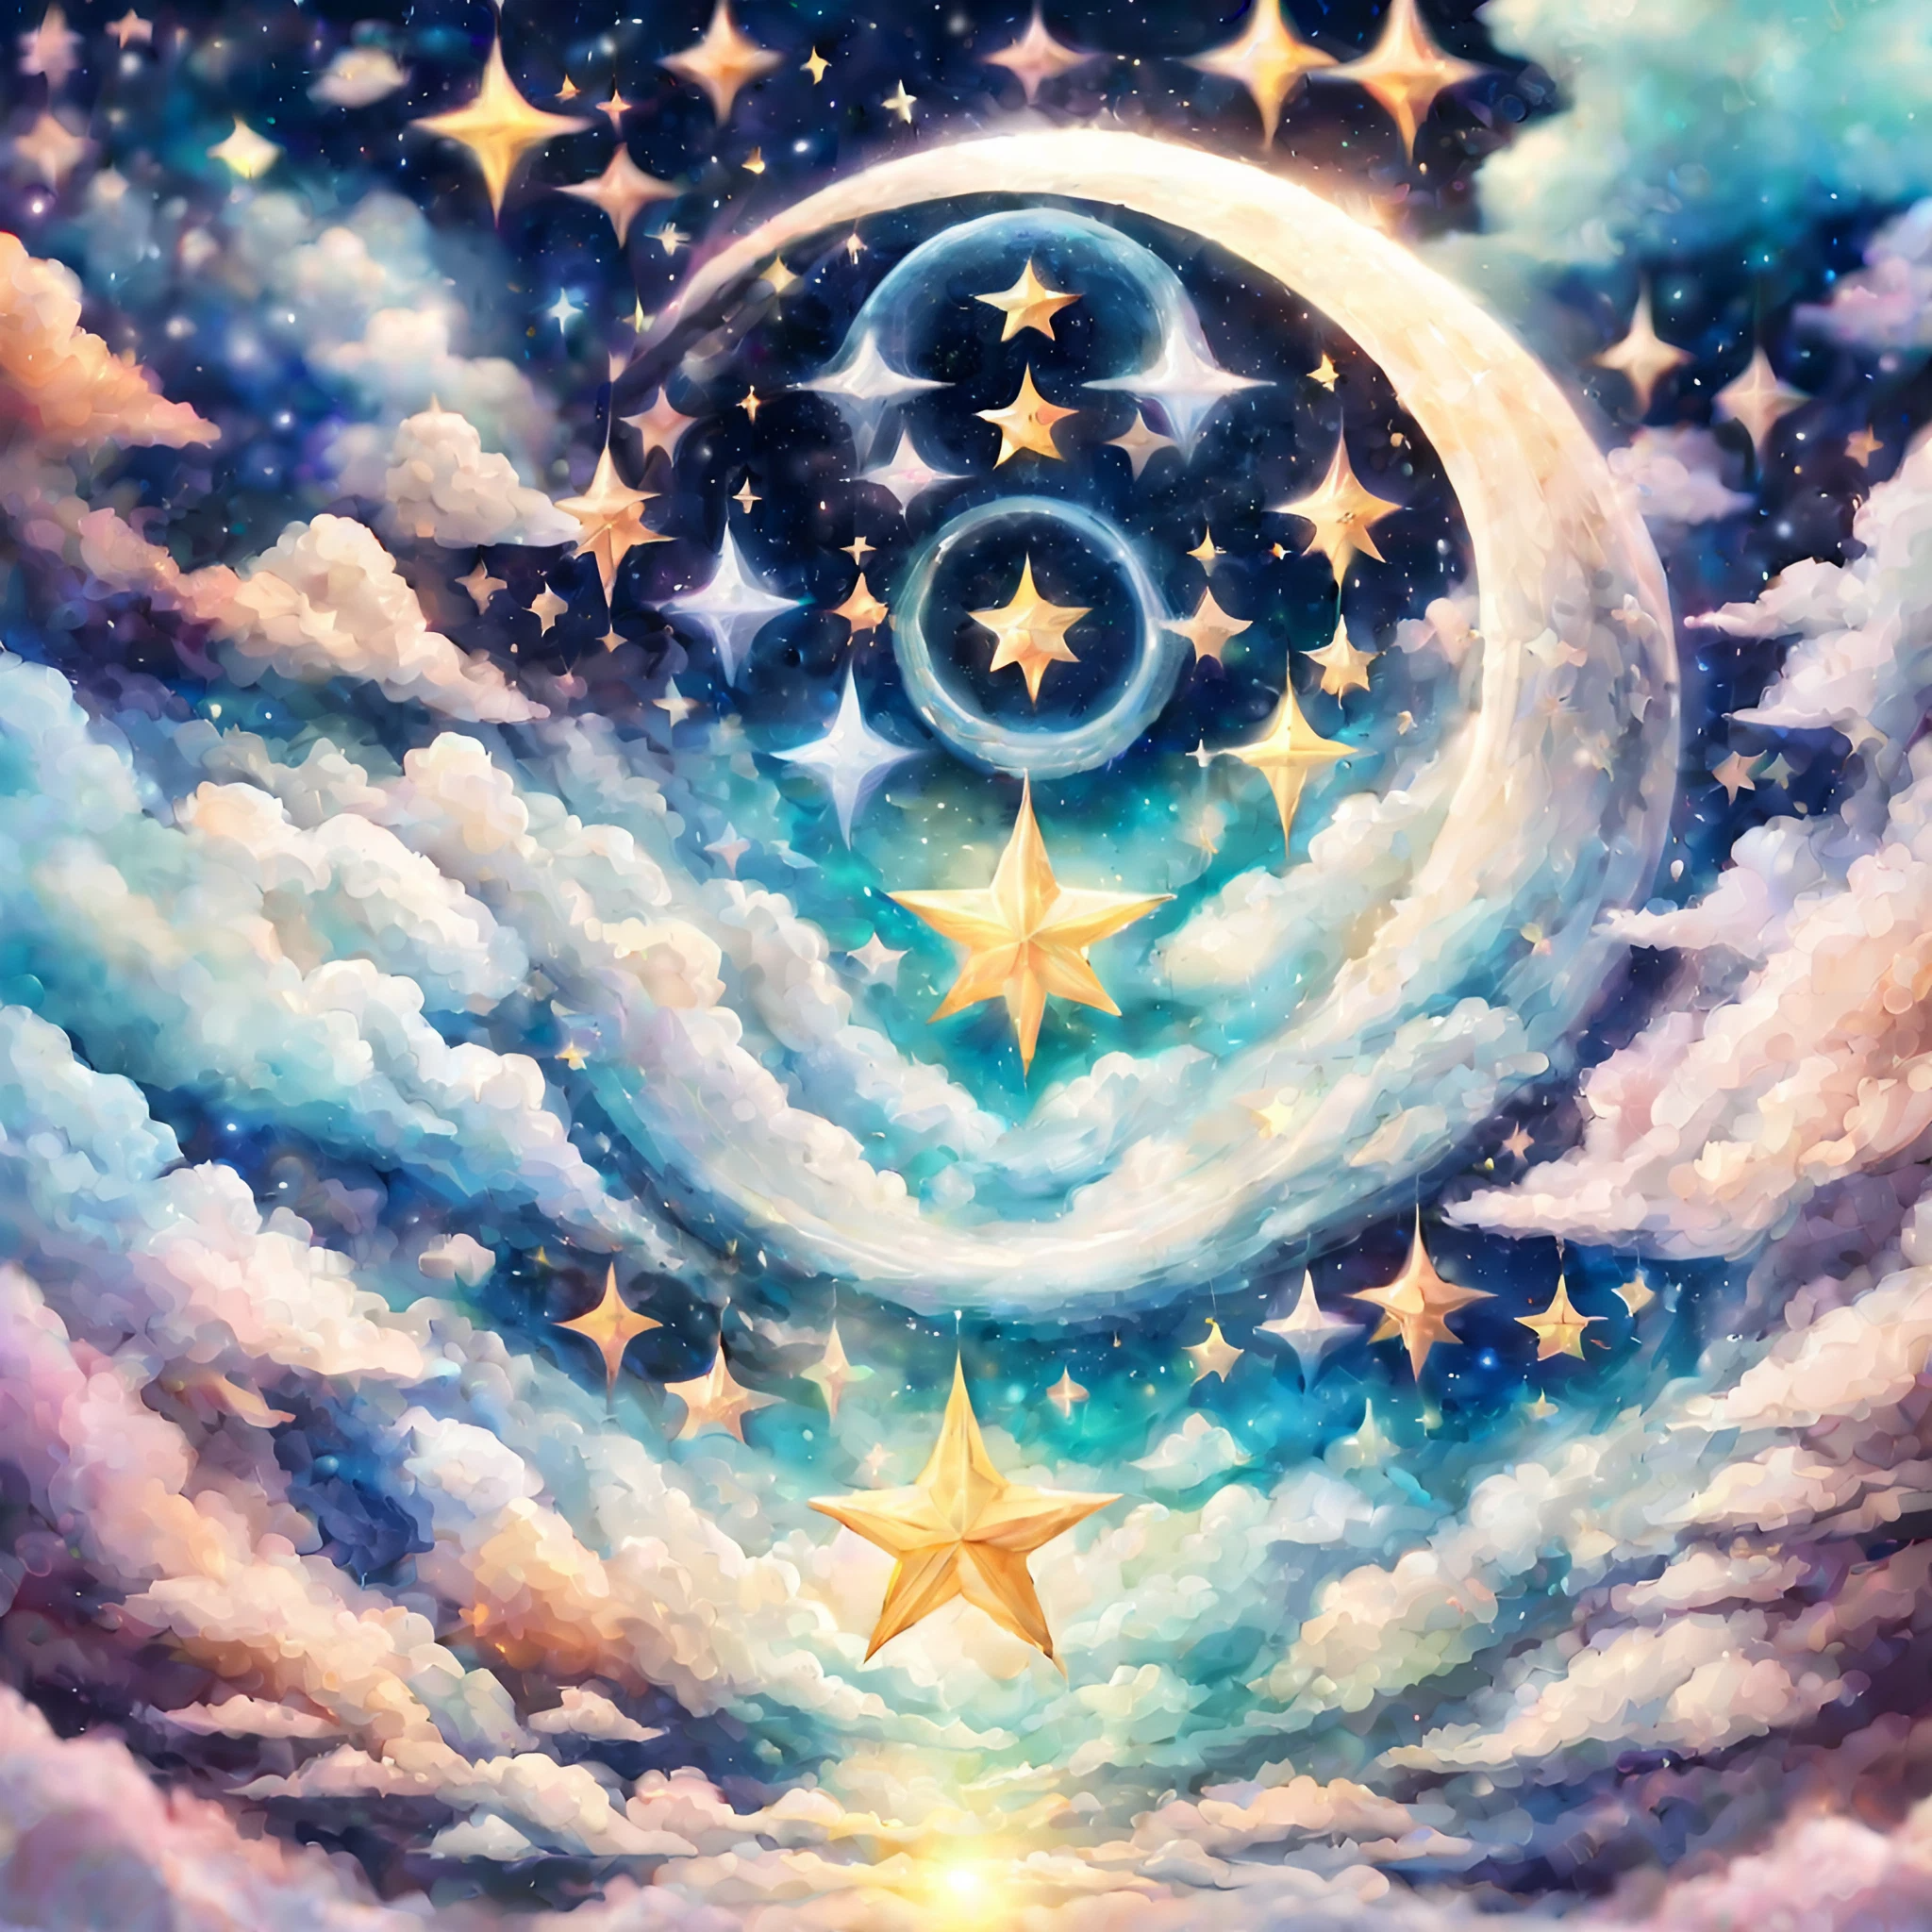 美しい夜空と煌めく星と大きな月のファンタジー風のかわいい癒しの無料イラスト画像素材